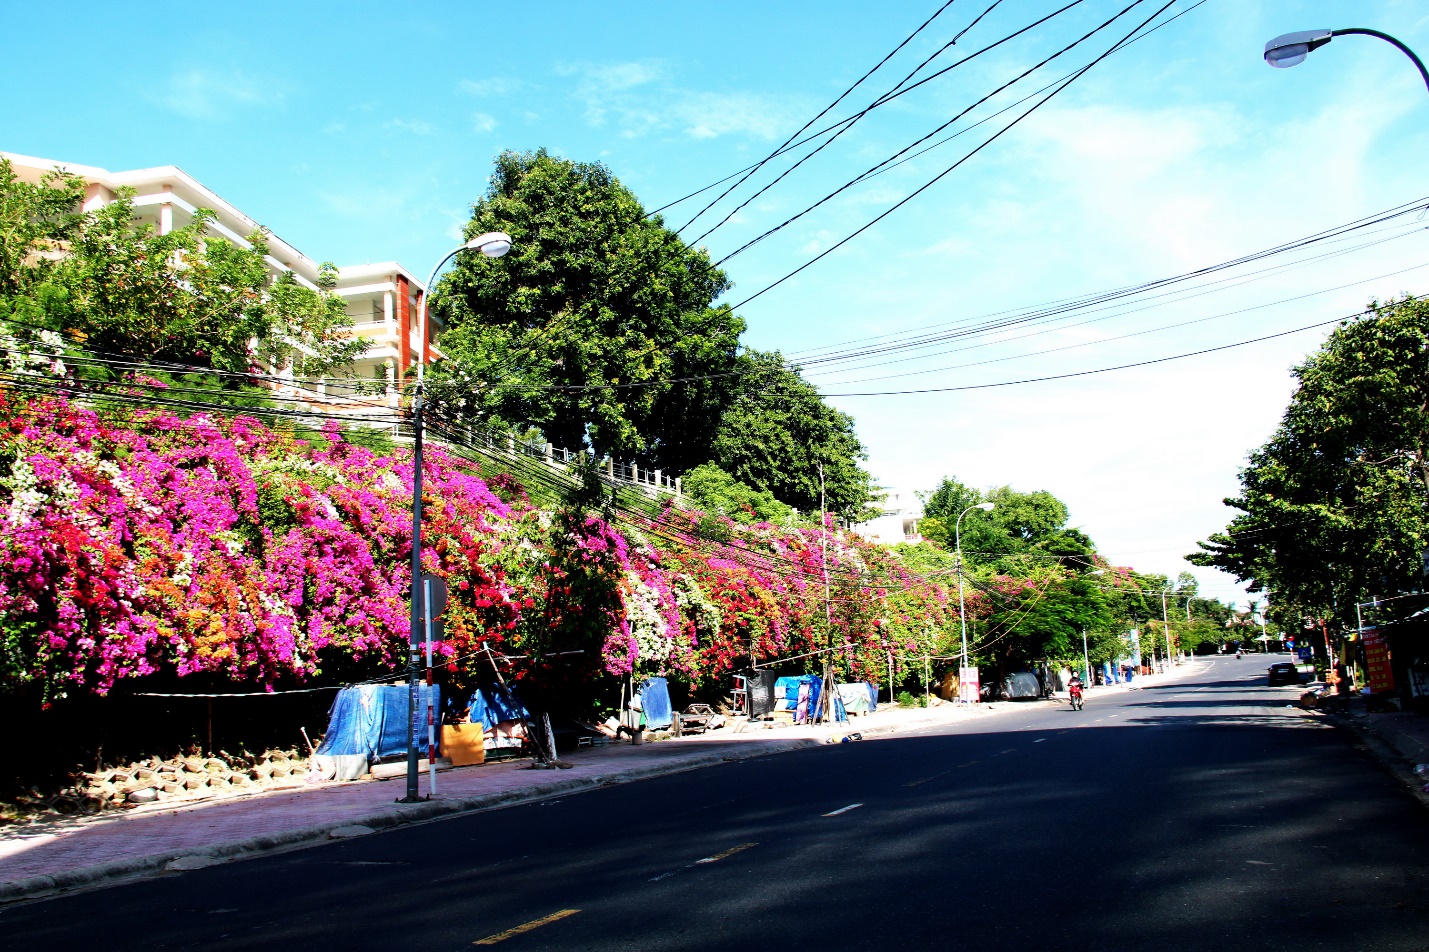 Con đường "cực phẩm" hoa giấy 5 màu ở phố biển Nha Trang - 1